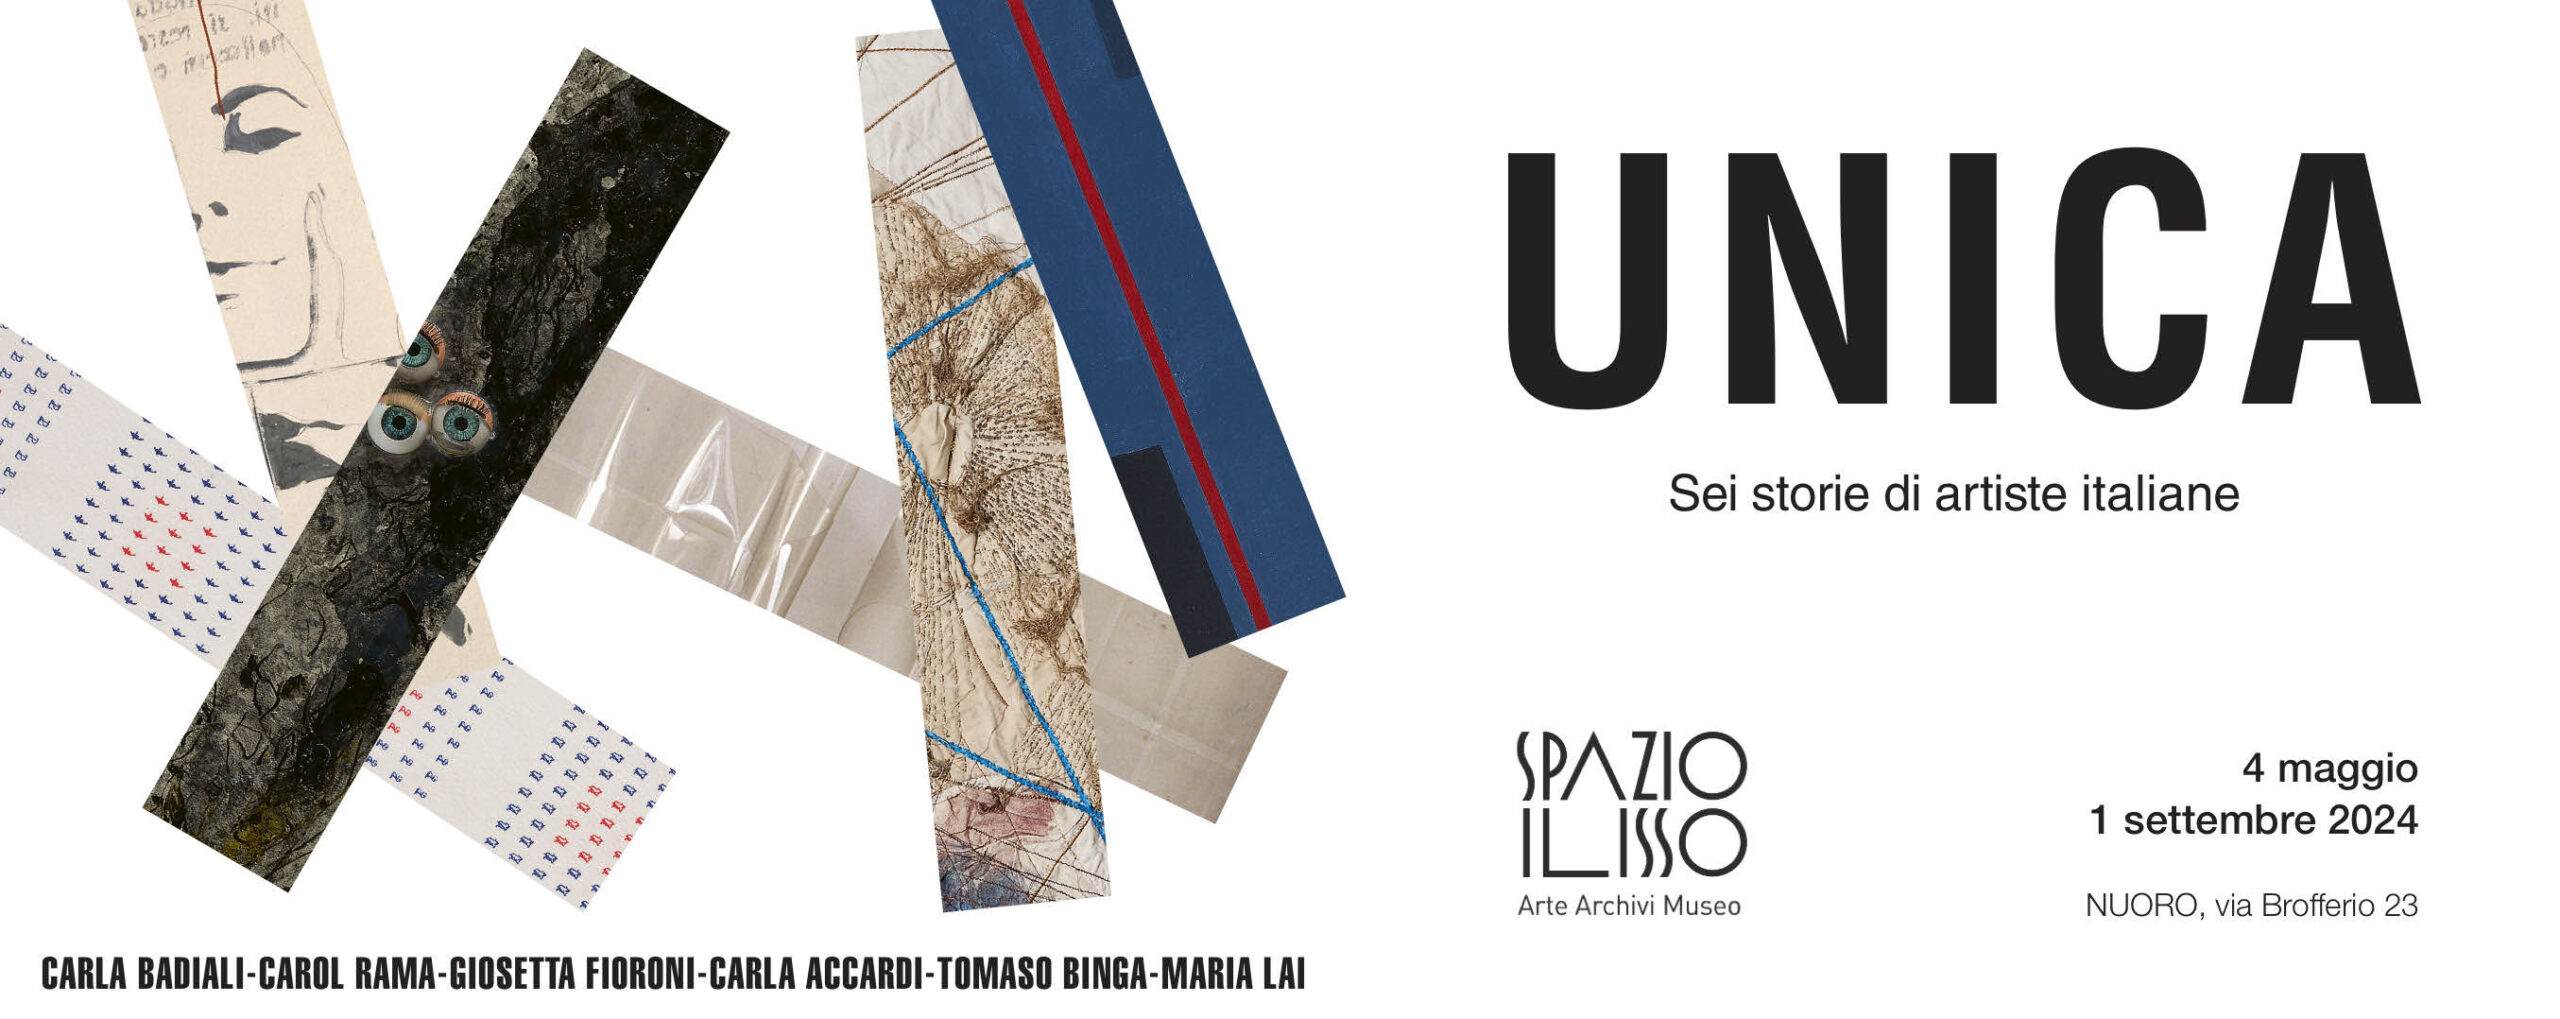 4 maggio – Nuoro. Spazio Ilisso si inaugura la mostra Unica, sei storie di artiste italiane